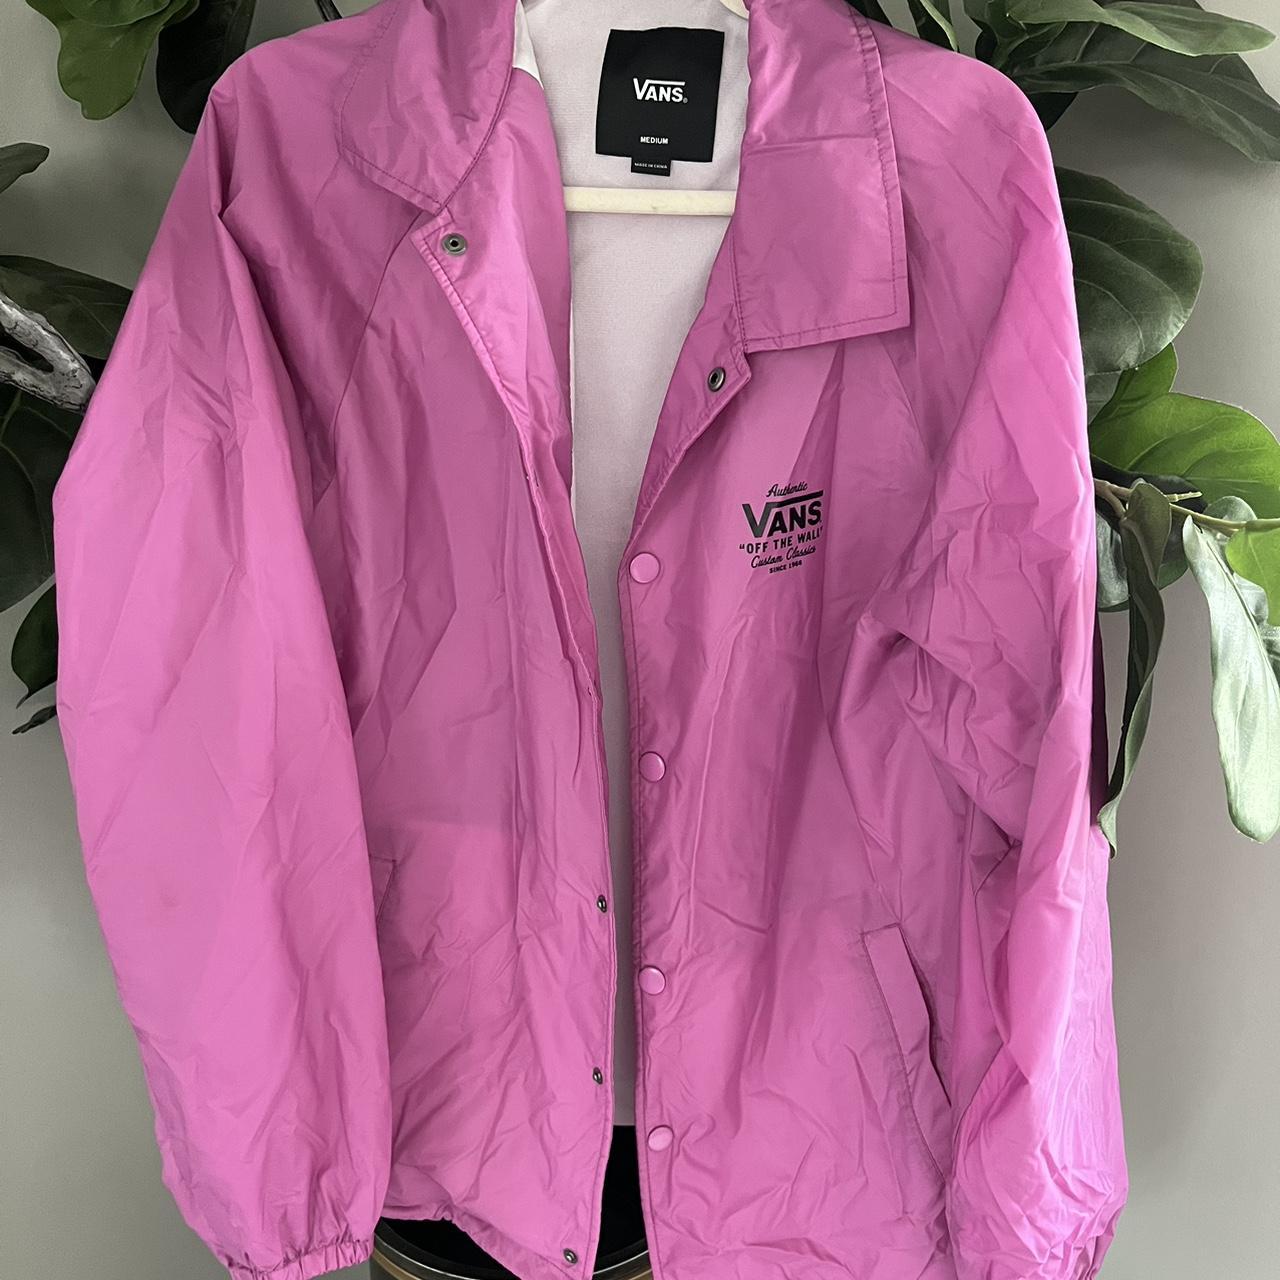 Vans Women's Pink and Purple Jacket | Depop